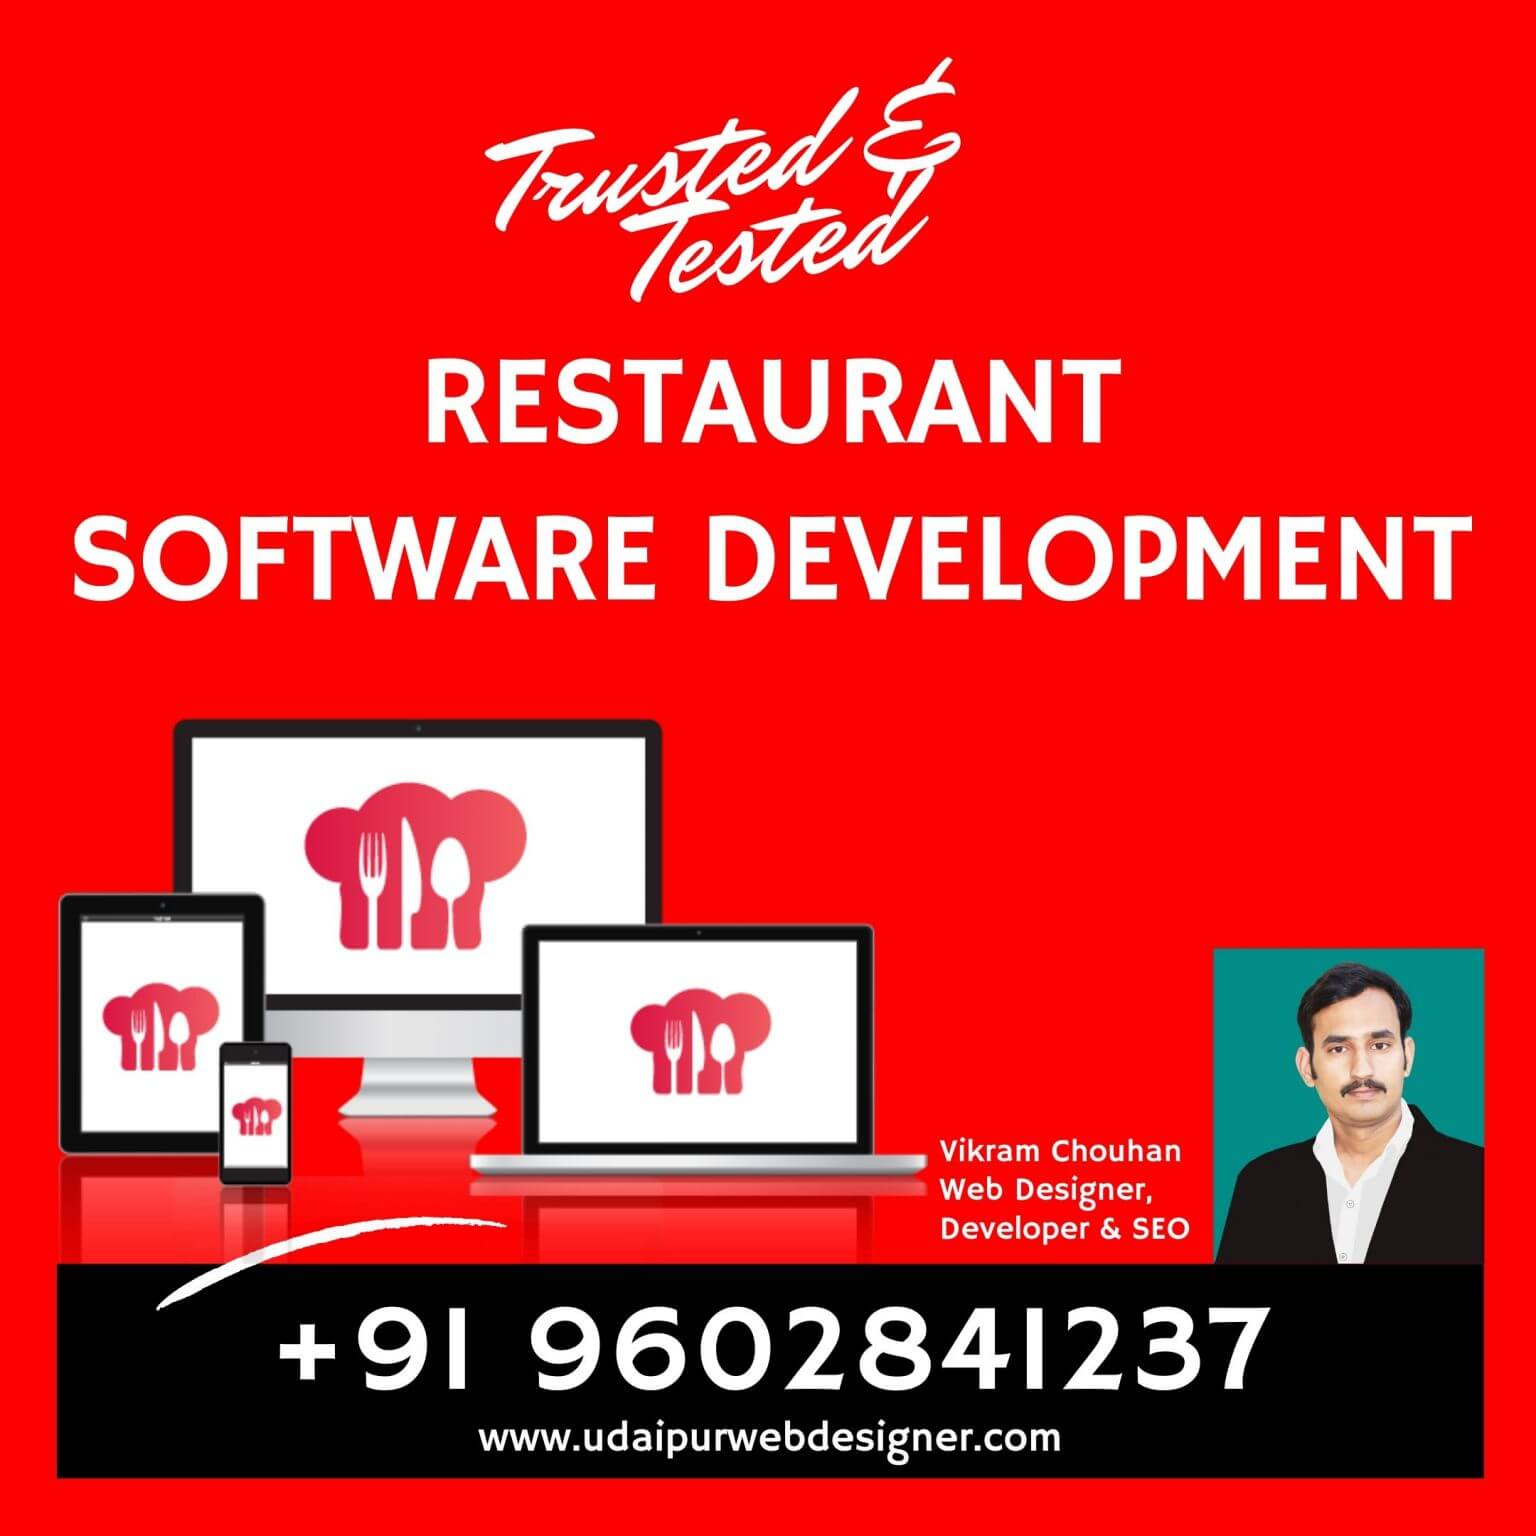 Restaurant-Software-Development-Udaipur-rajasthan-india-1536×1536